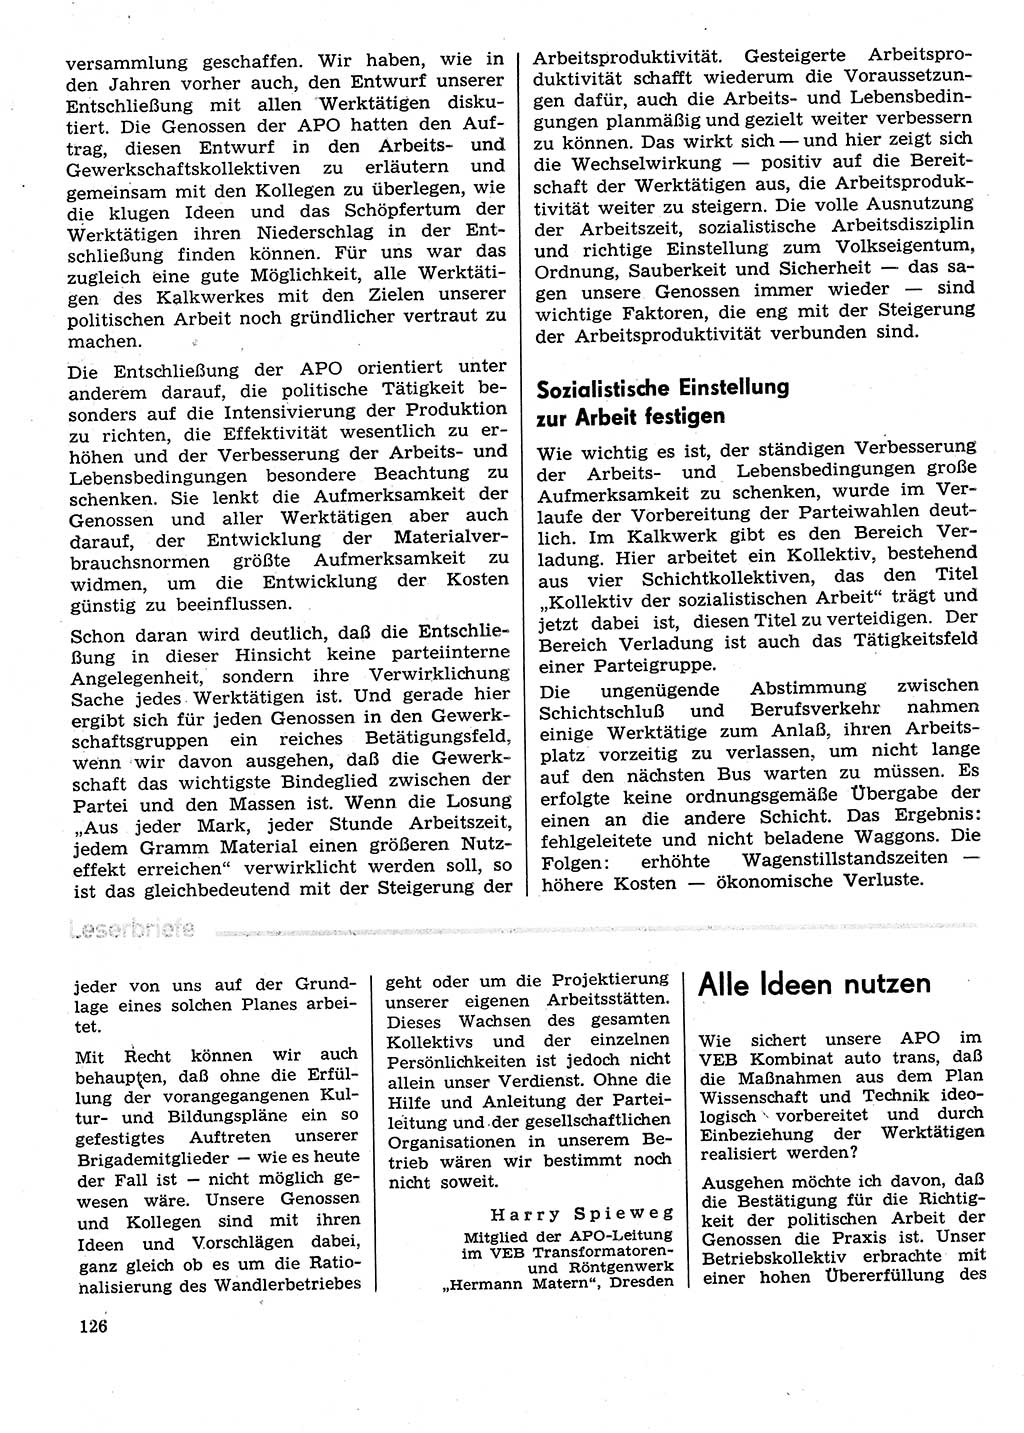 Neuer Weg (NW), Organ des Zentralkomitees (ZK) der SED (Sozialistische Einheitspartei Deutschlands) für Fragen des Parteilebens, 29. Jahrgang [Deutsche Demokratische Republik (DDR)] 1974, Seite 126 (NW ZK SED DDR 1974, S. 126)